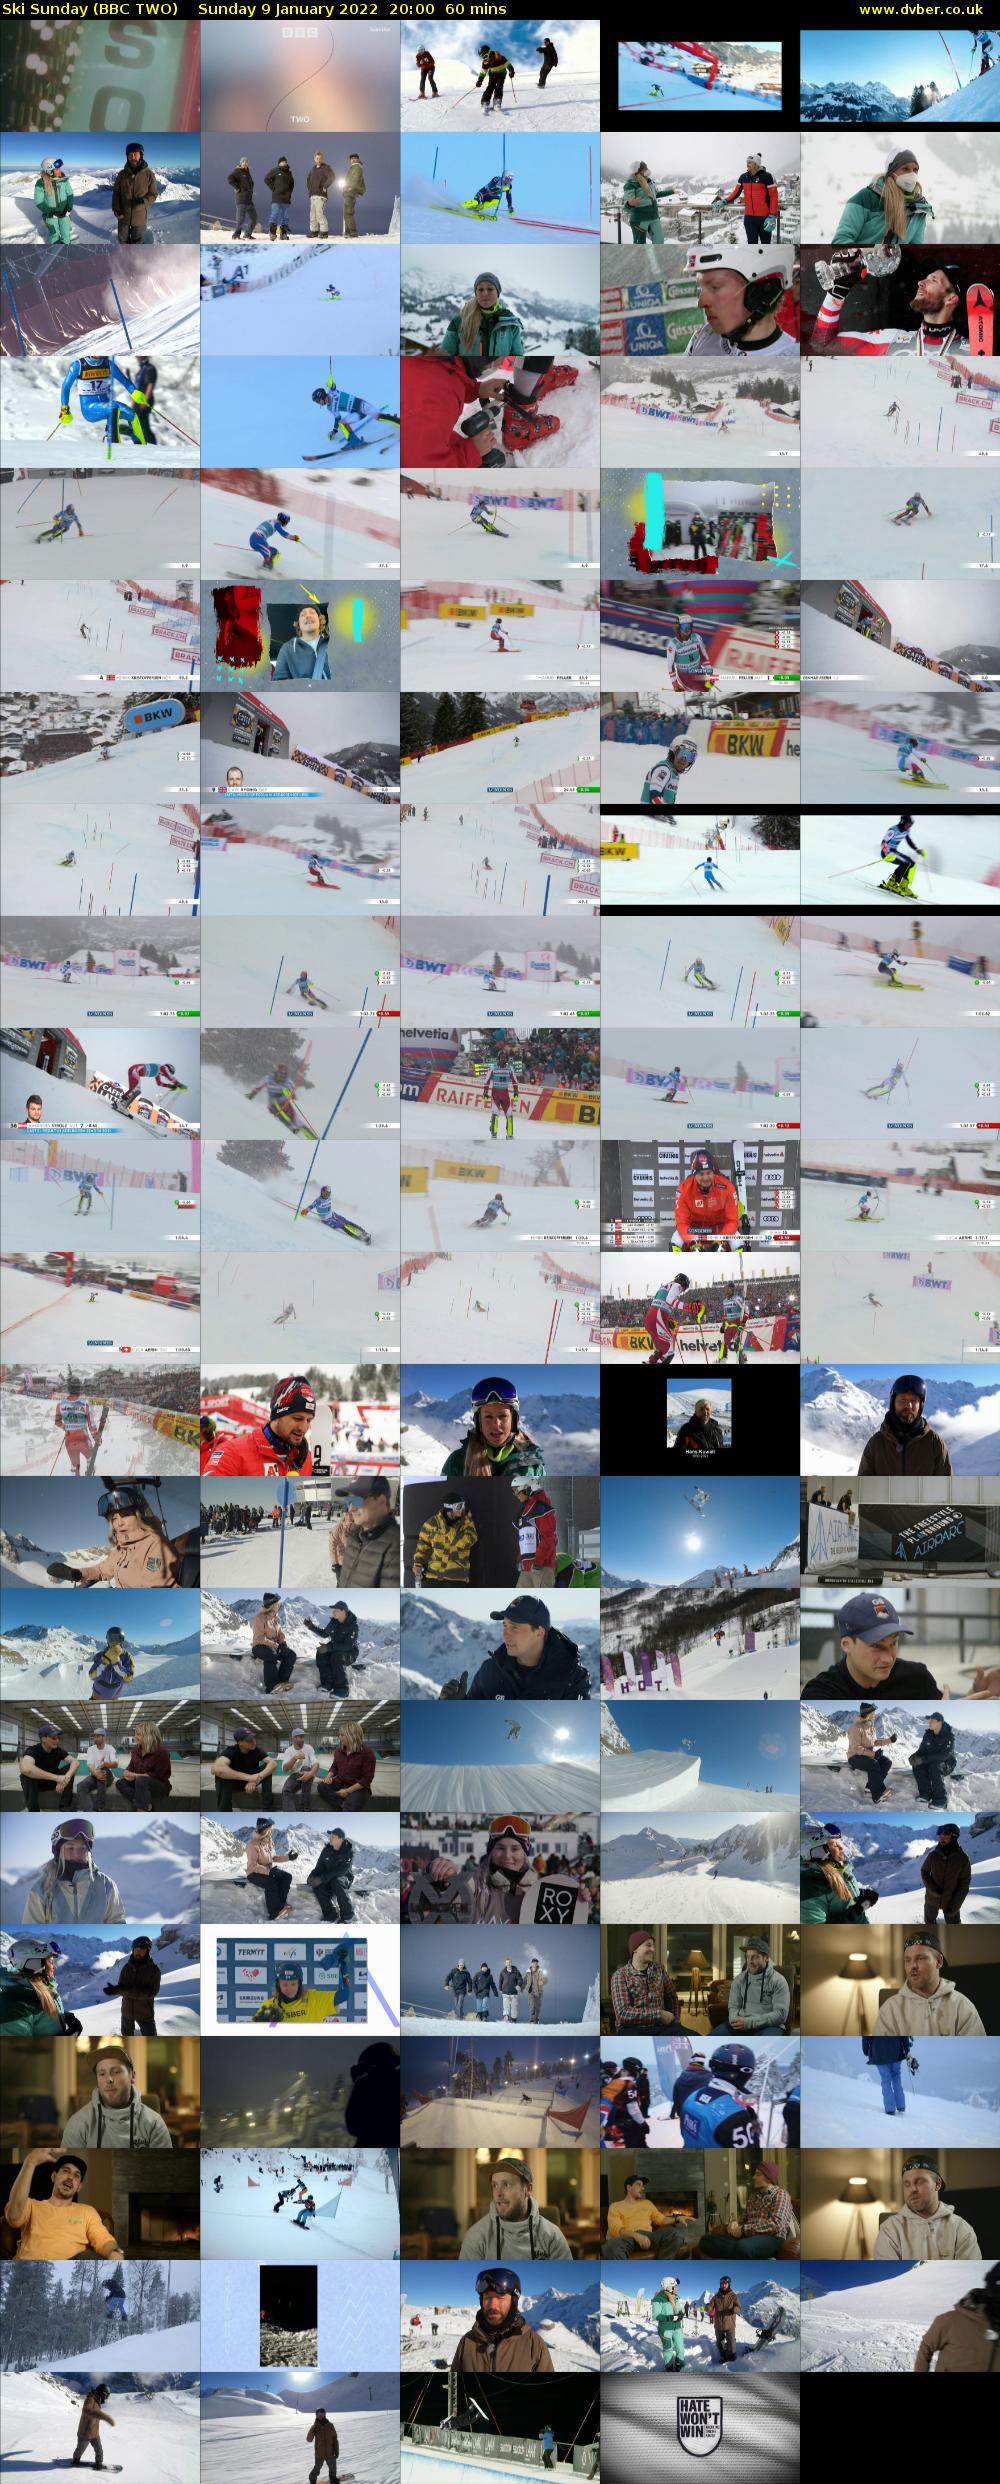 Ski Sunday (BBC TWO) Sunday 9 January 2022 20:00 - 21:00